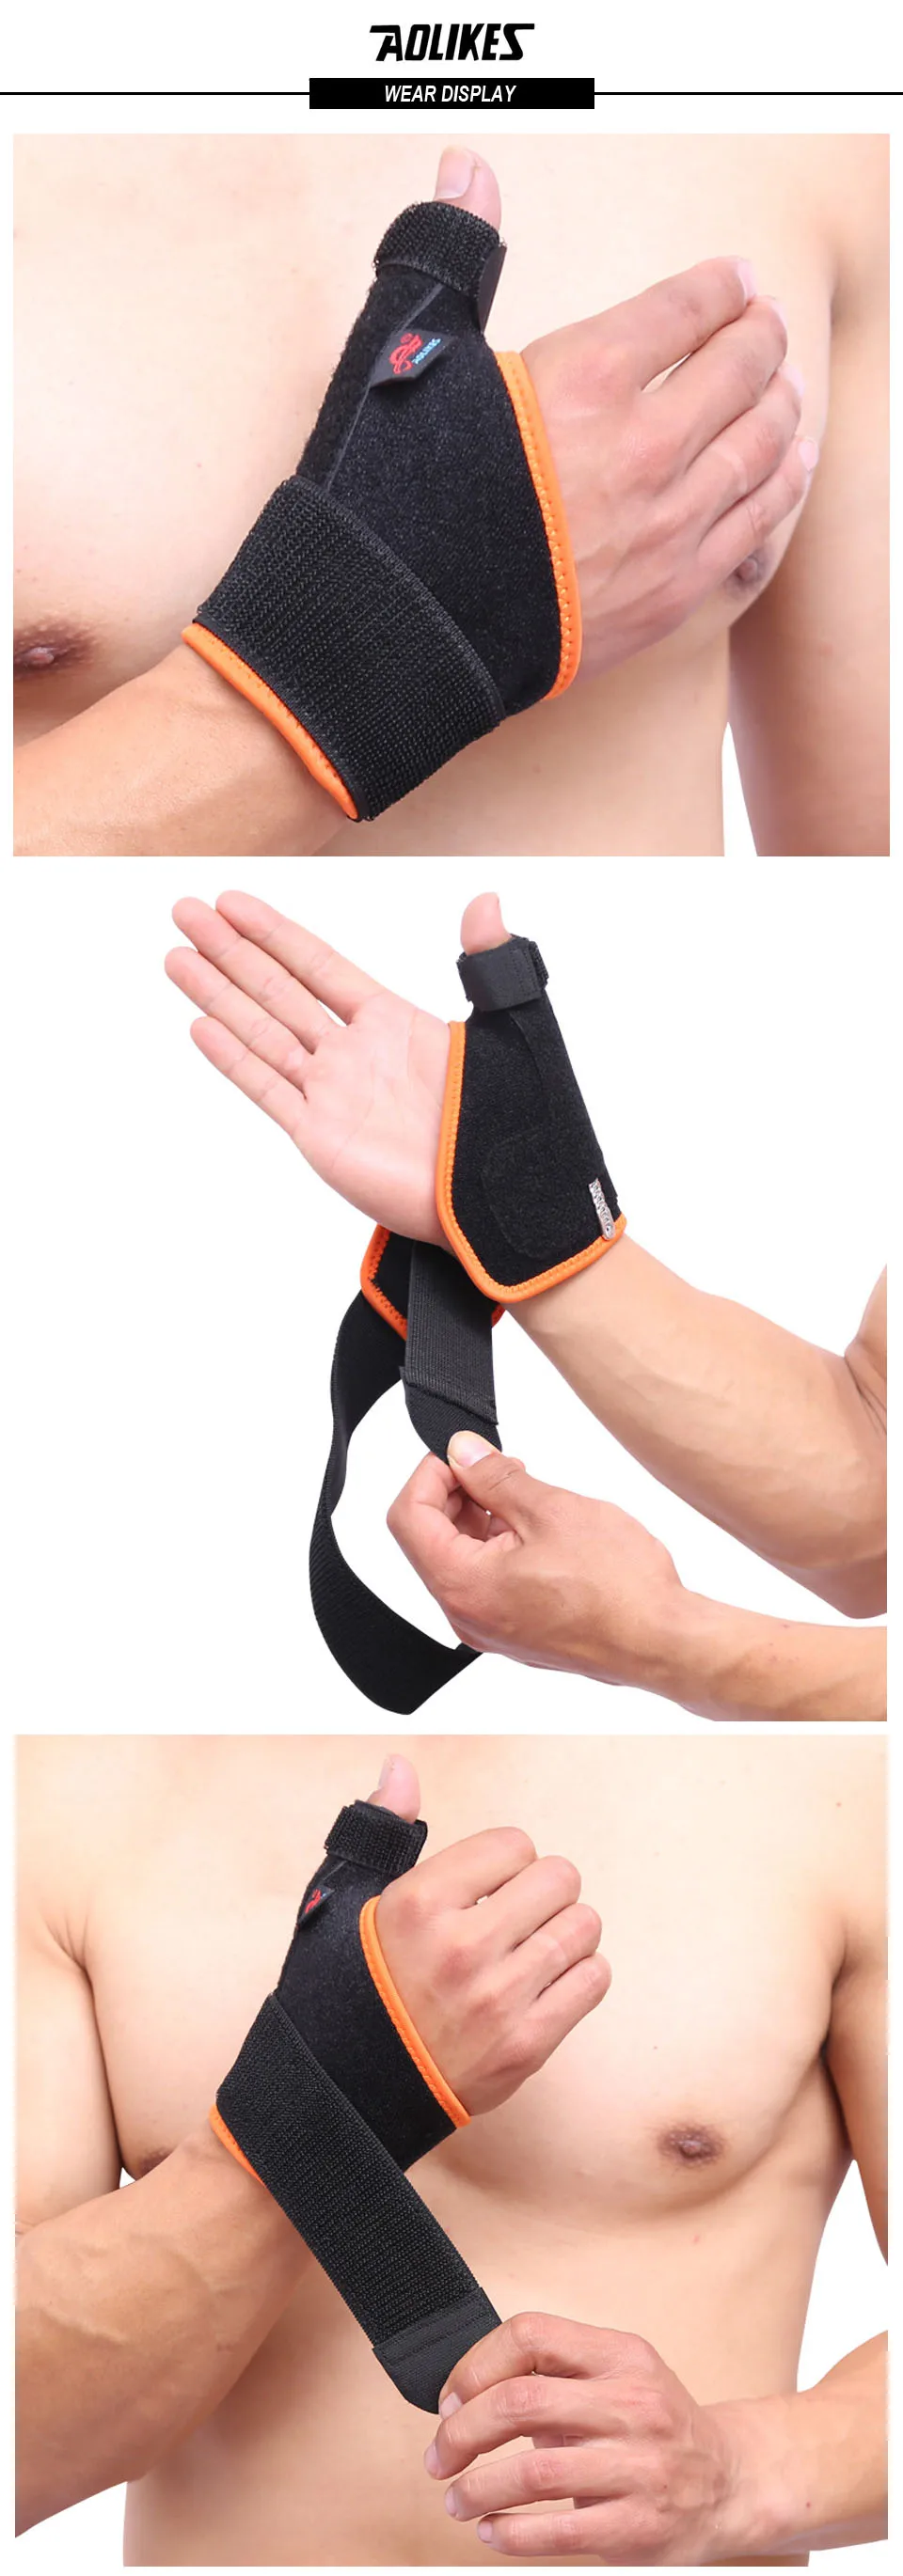 AOLIKES 1 шт. палец растяжение защитный Опоры для запястья обертывания сухожилия перелом неподвижная Мышь пальцем коррекции Спортивная безопасность